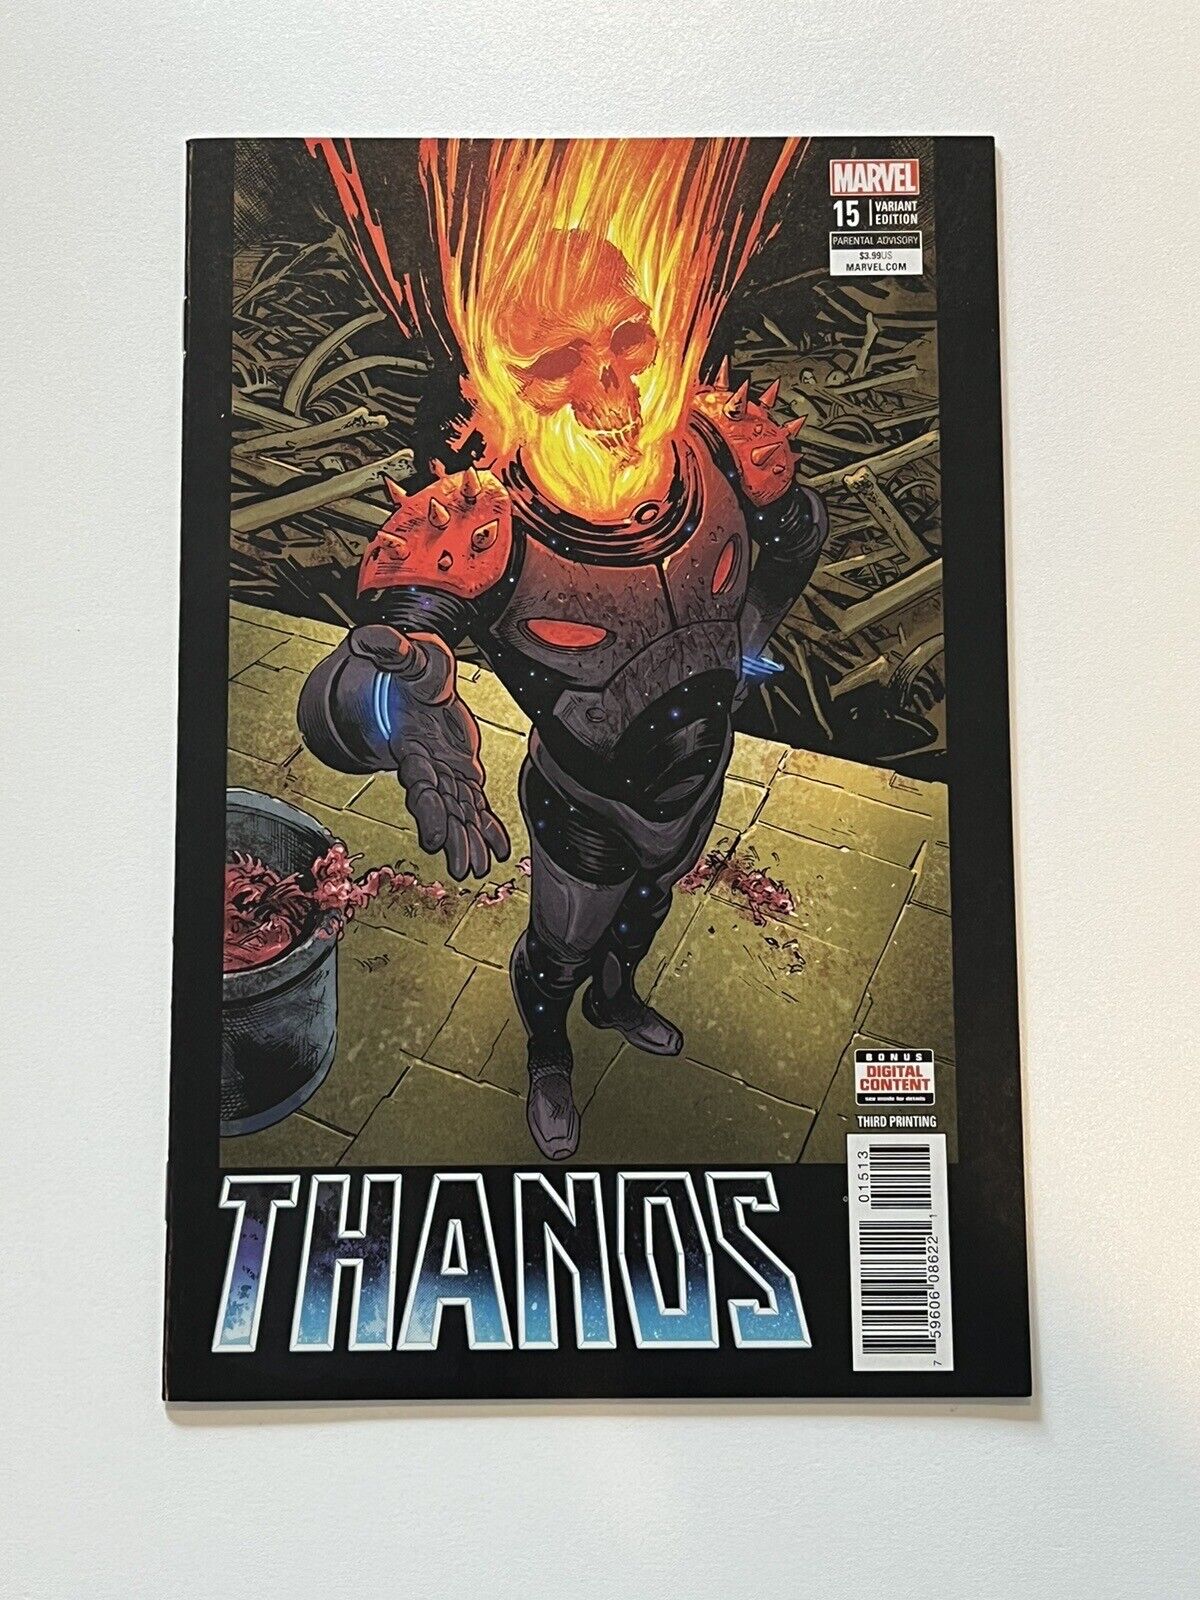 Thanos #15 (Marvel, June 2018) 3rd Print Variant VF/NM